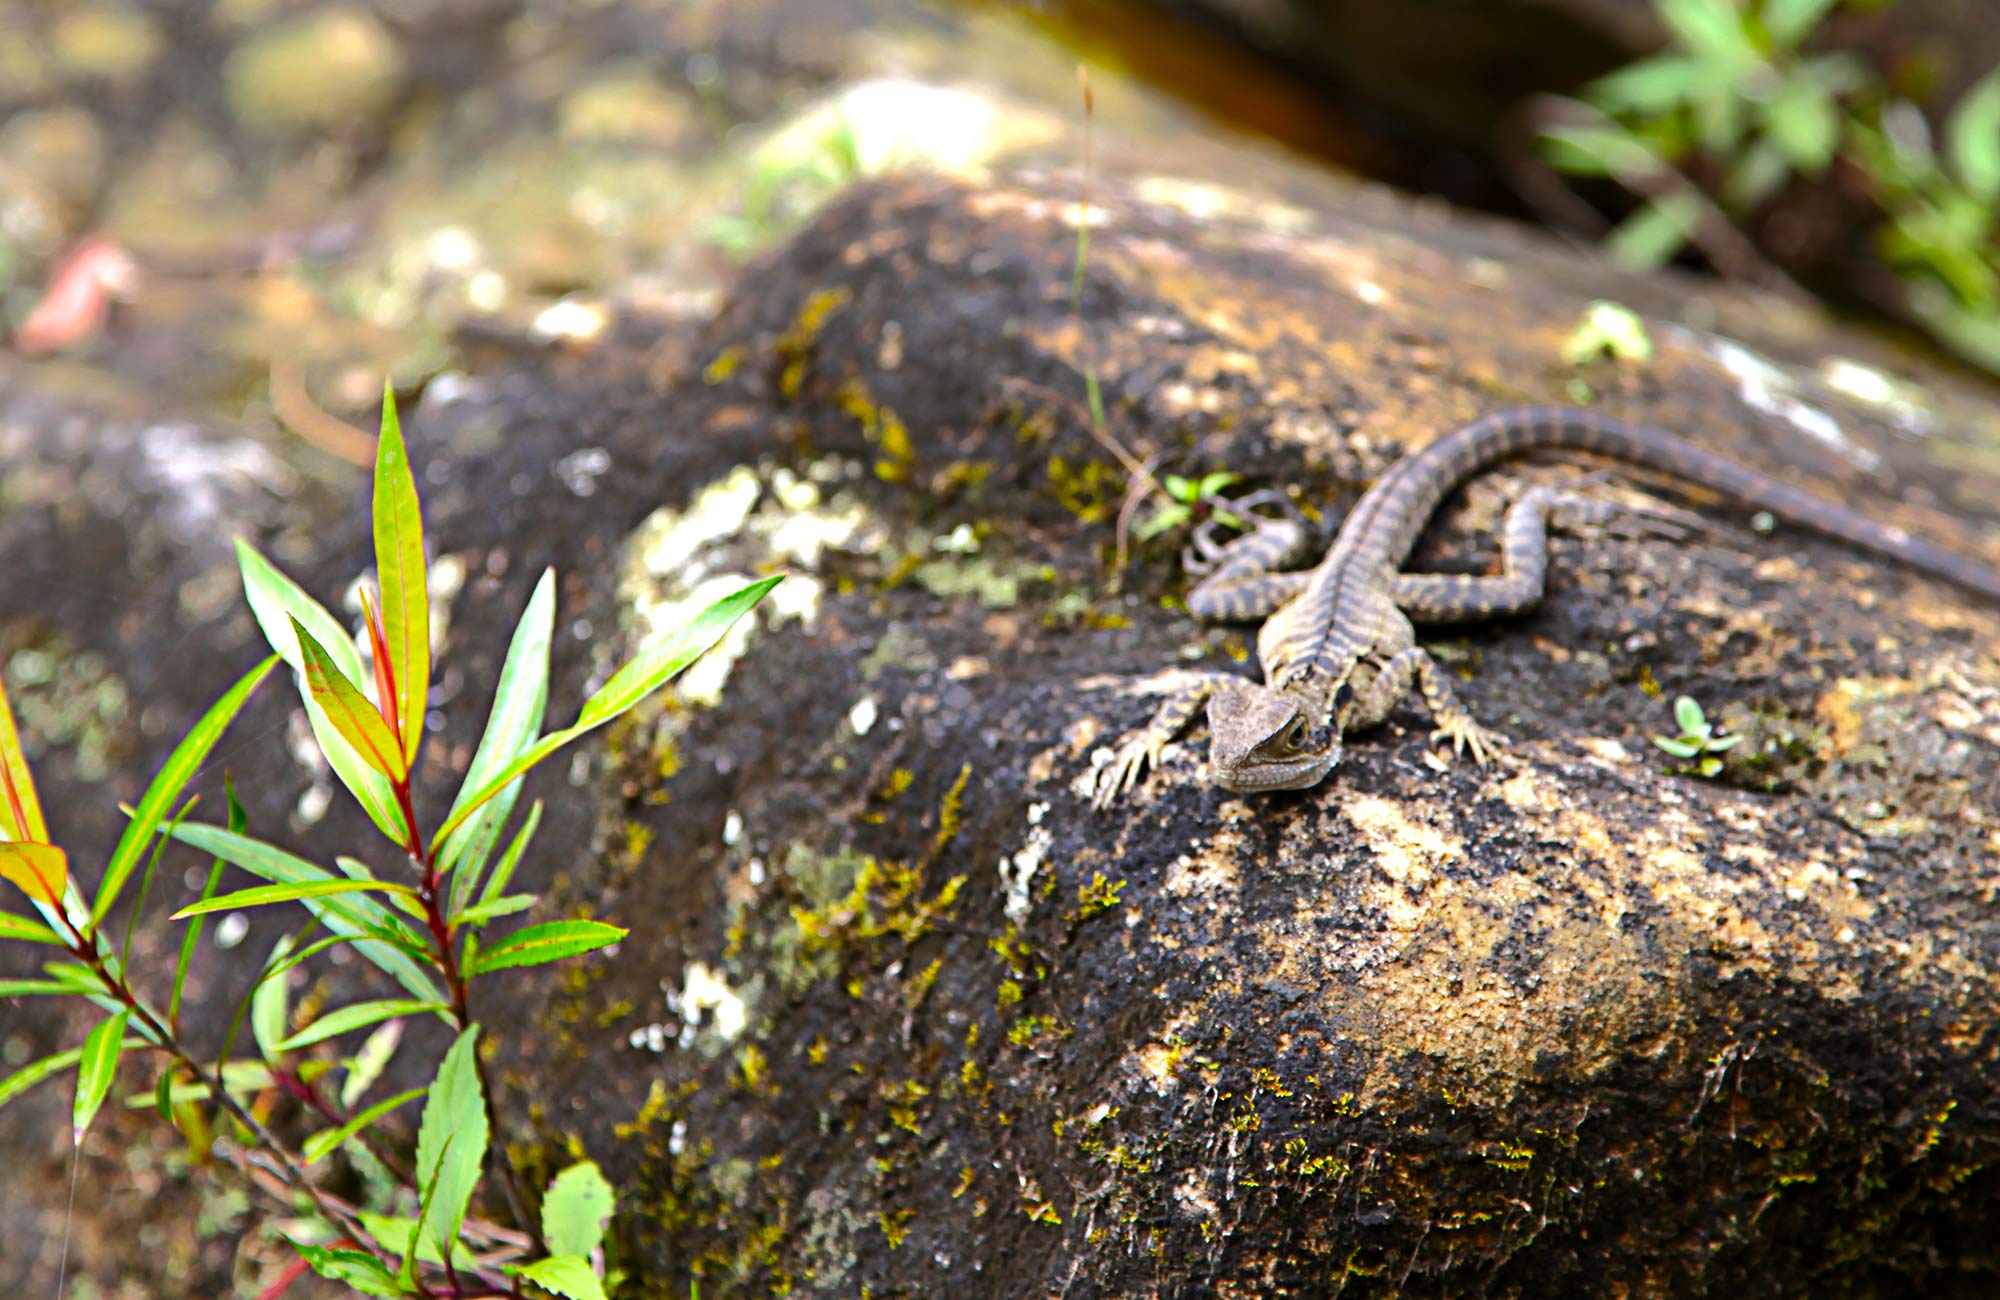 Lizard. Photo: Shaun Sursok